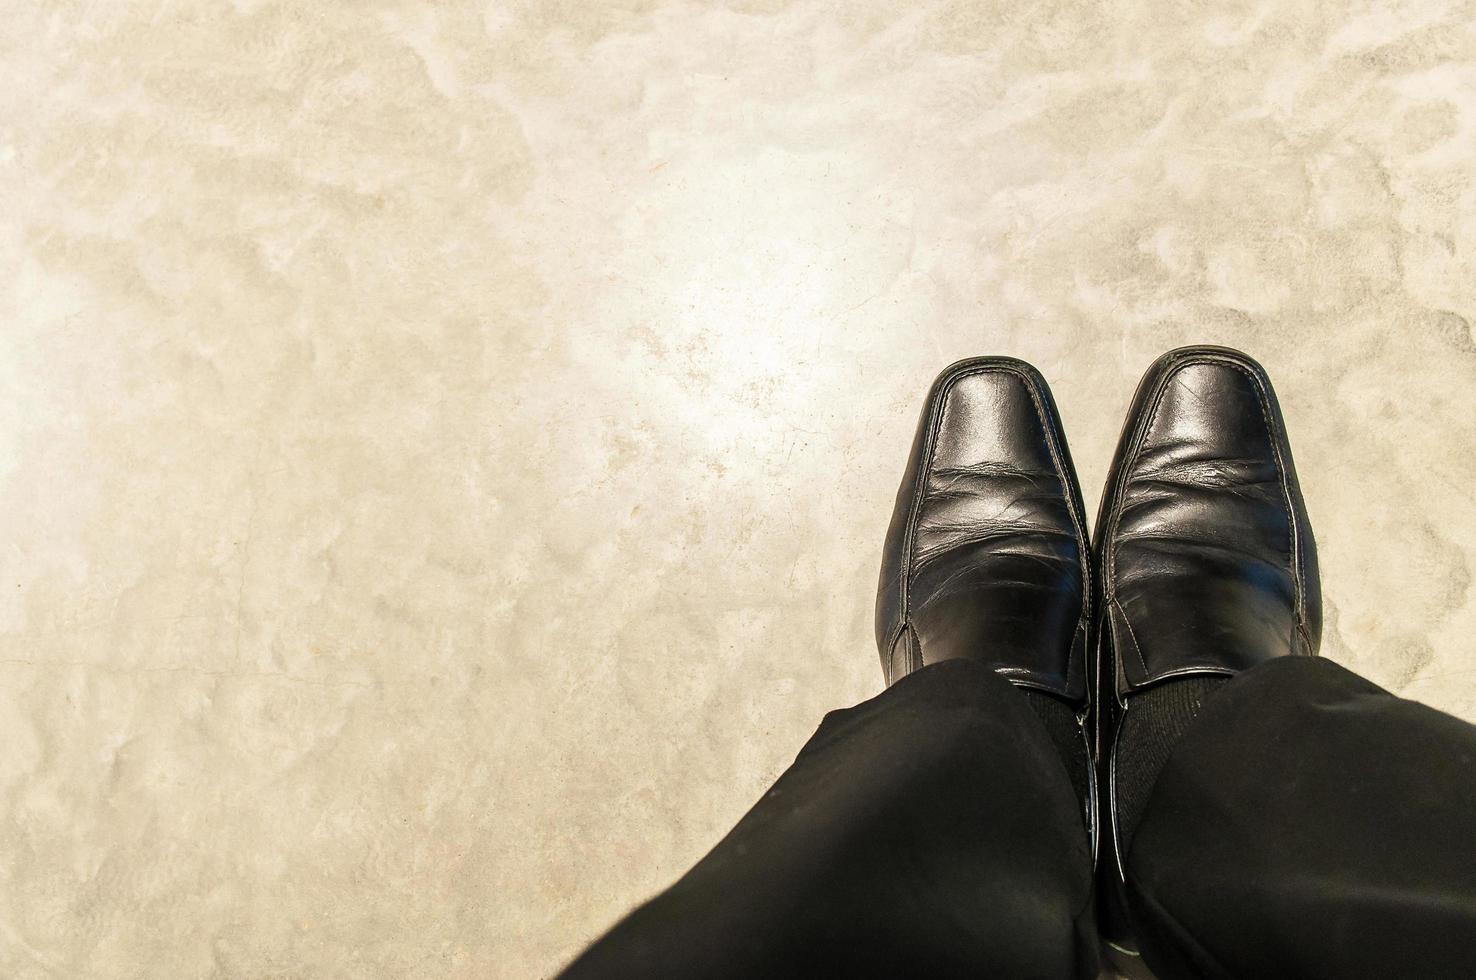 vista dall'alto di vecchi pantaloni neri e scarpe di pelle di relax seduto uomo d'affari sul pavimento di cemento. la foto è focalizzata sulle scarpe.